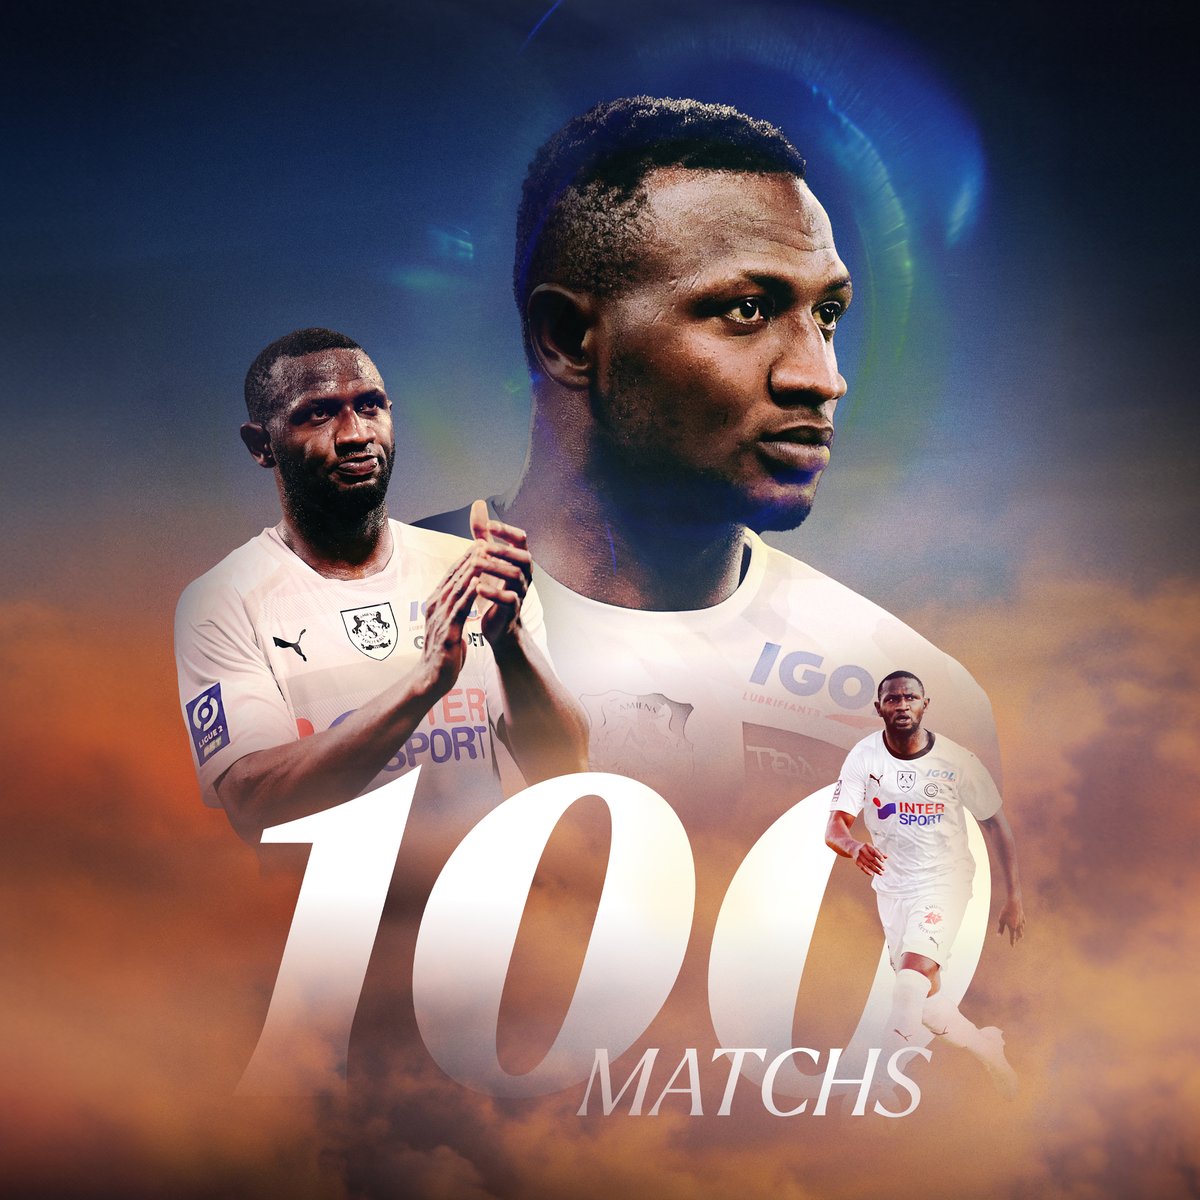 🏆👏 Amiénois depuis janvier 2020, @NicholasOpoku_ vient de passer le cap symbolique des 100 matchs disputés avec la tunique de l'Amiens SC sur les épaules ! Face à Grenoble, le numéro 4 portera son total à 101 rencontres ! #TeamASC 🖤🤍